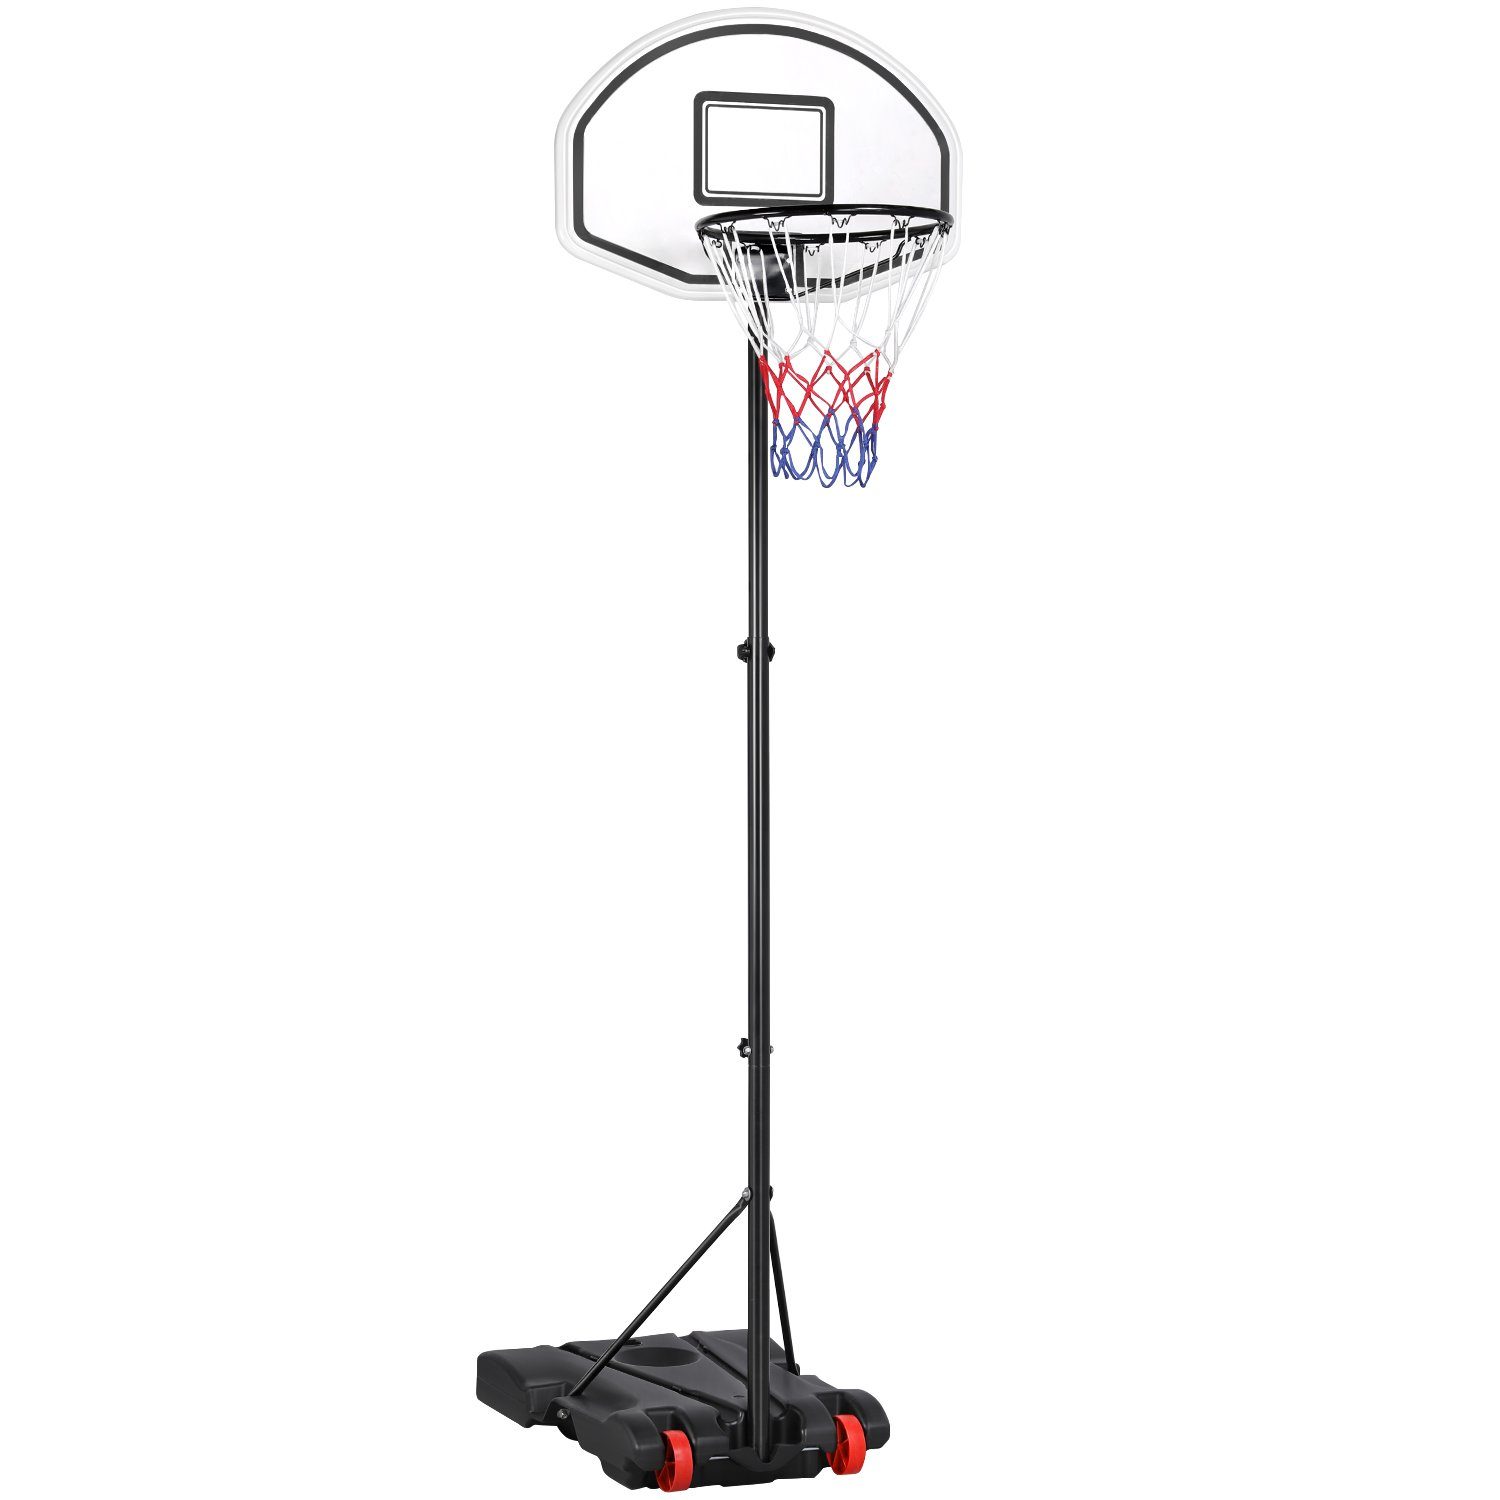 Yaheetech Basketballständer Basketballkorb mit Ständer Outdoor Basketballanlage Standfuß mit Wasser oder Sand befüllbar Korbanlage 219-279 cm höhenverstellbar